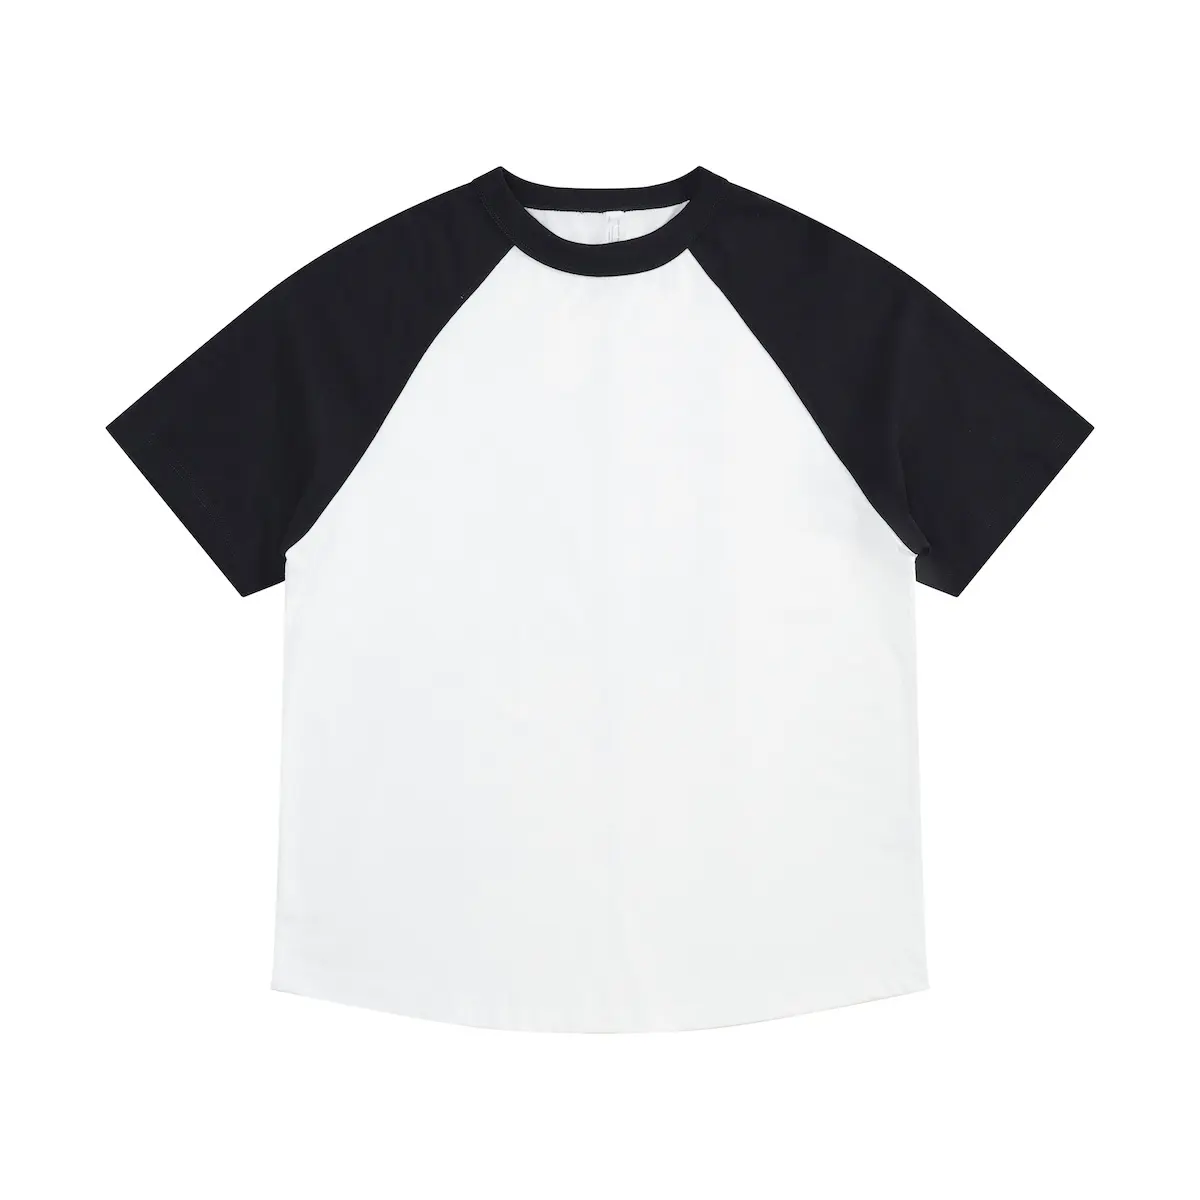 Мужская 100% хлопковая футболка 240gsm, оптовая продажа, трафаретная печать с вашим логотипом, Мужская футболка большого размера, подходящая по цвету